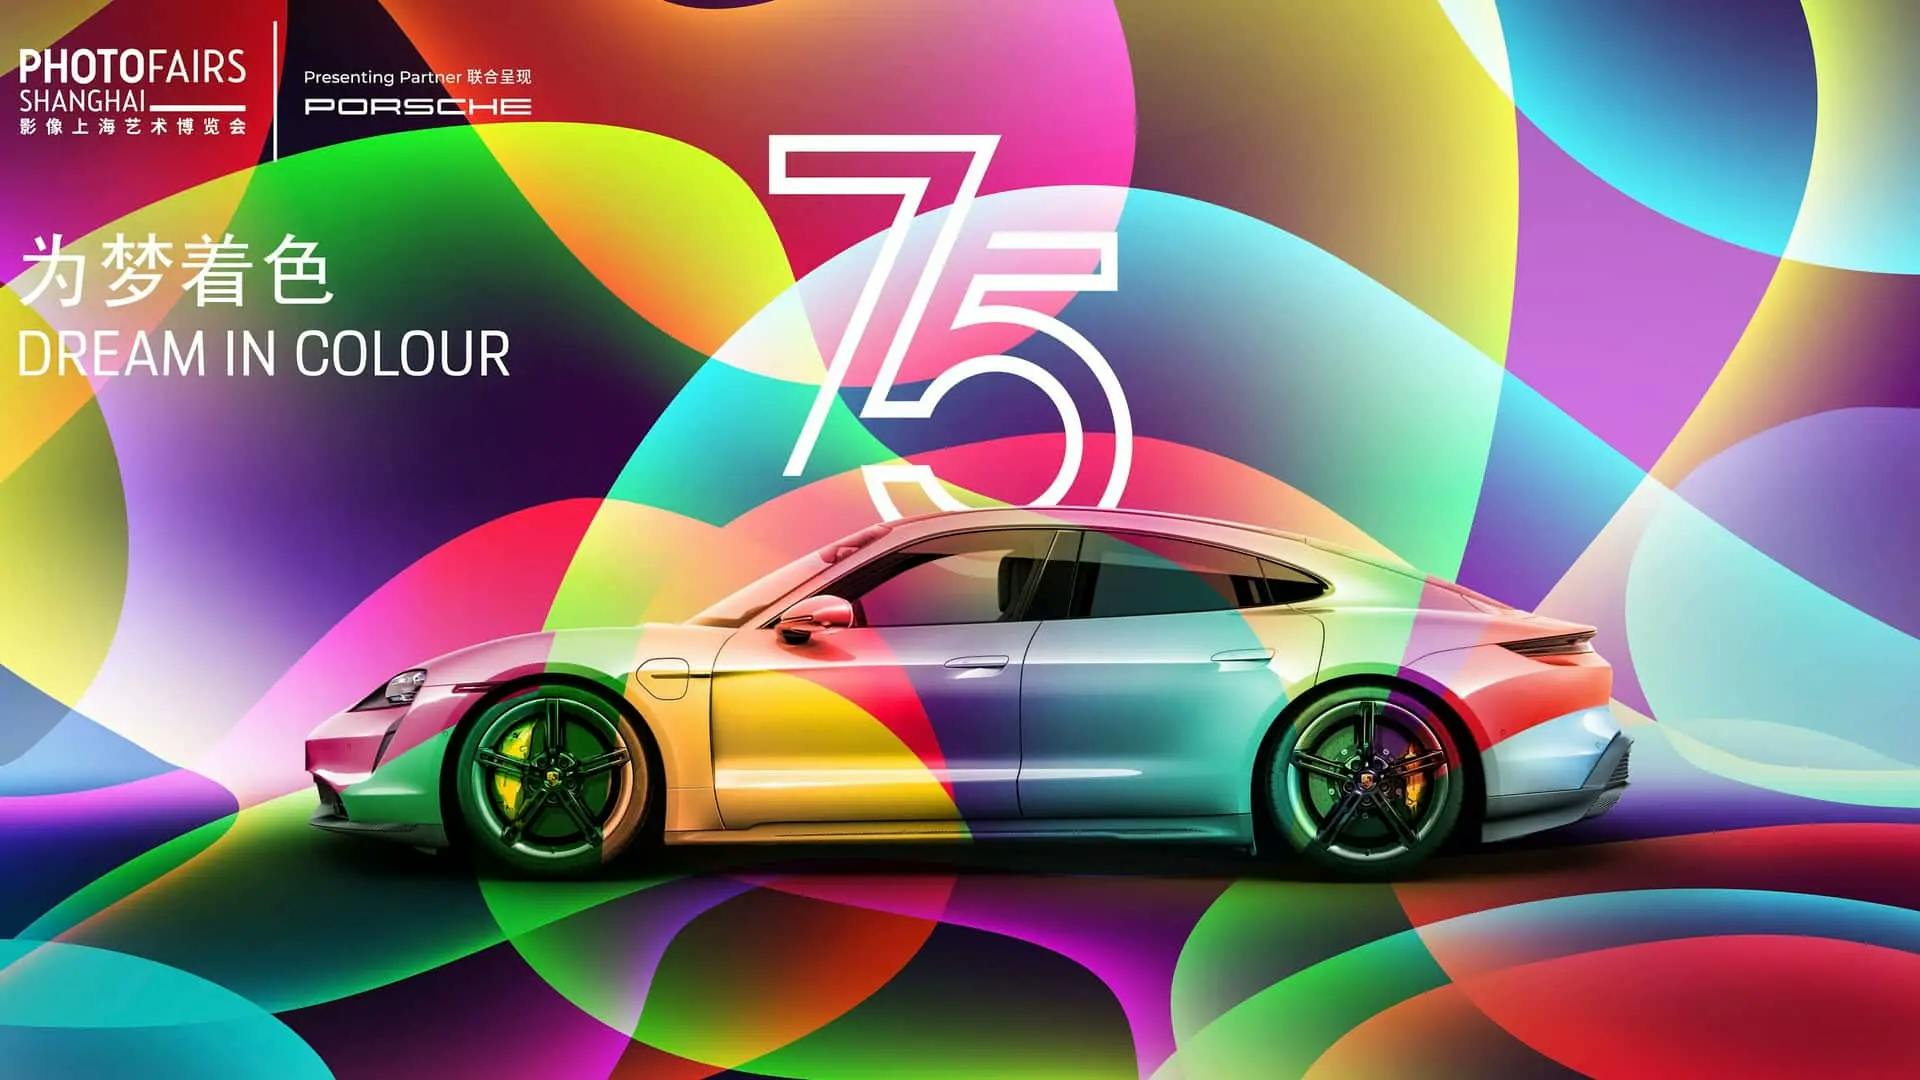 Porsche Taycan Art Car sărbătorește cea de-a 75-a aniversare a mărcii la Shanghai